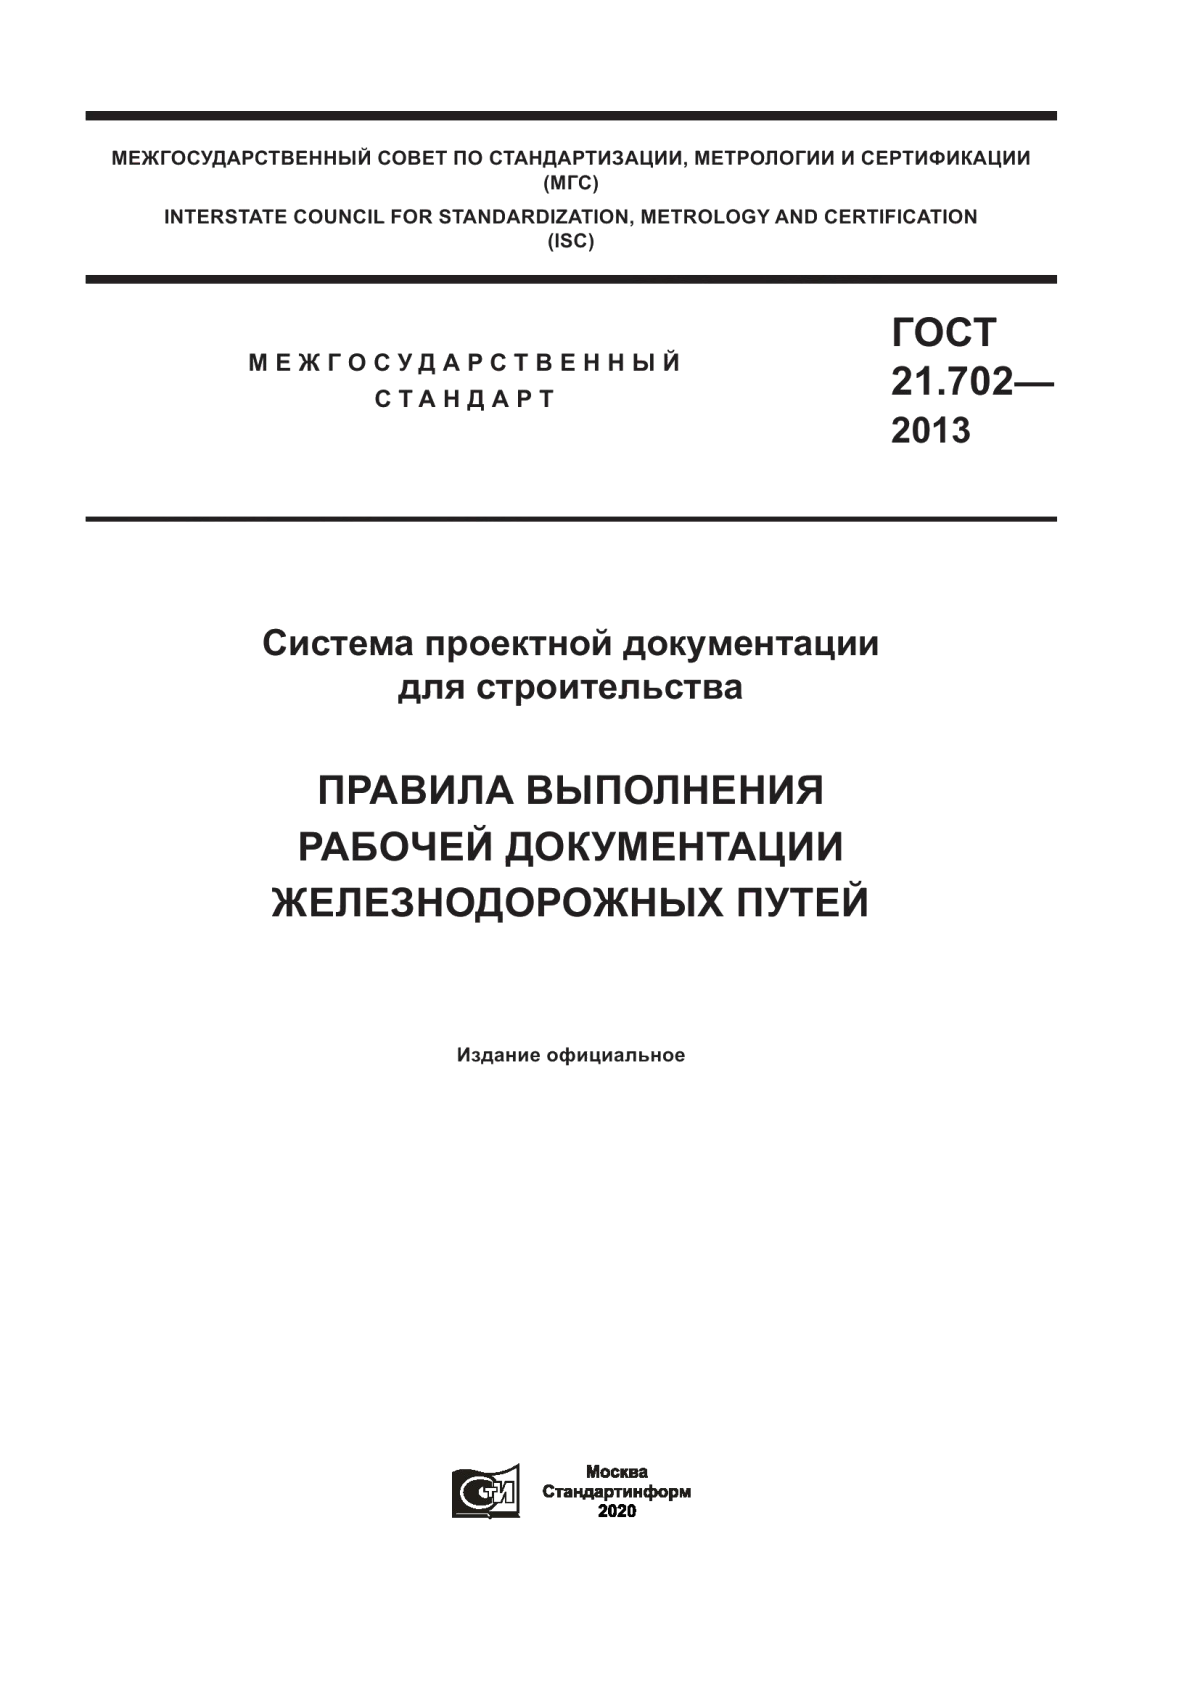 ГОСТ 21.702-2013 Система проектной документации для строительства. Правила выполнения рабочей документации железнодорожных путей